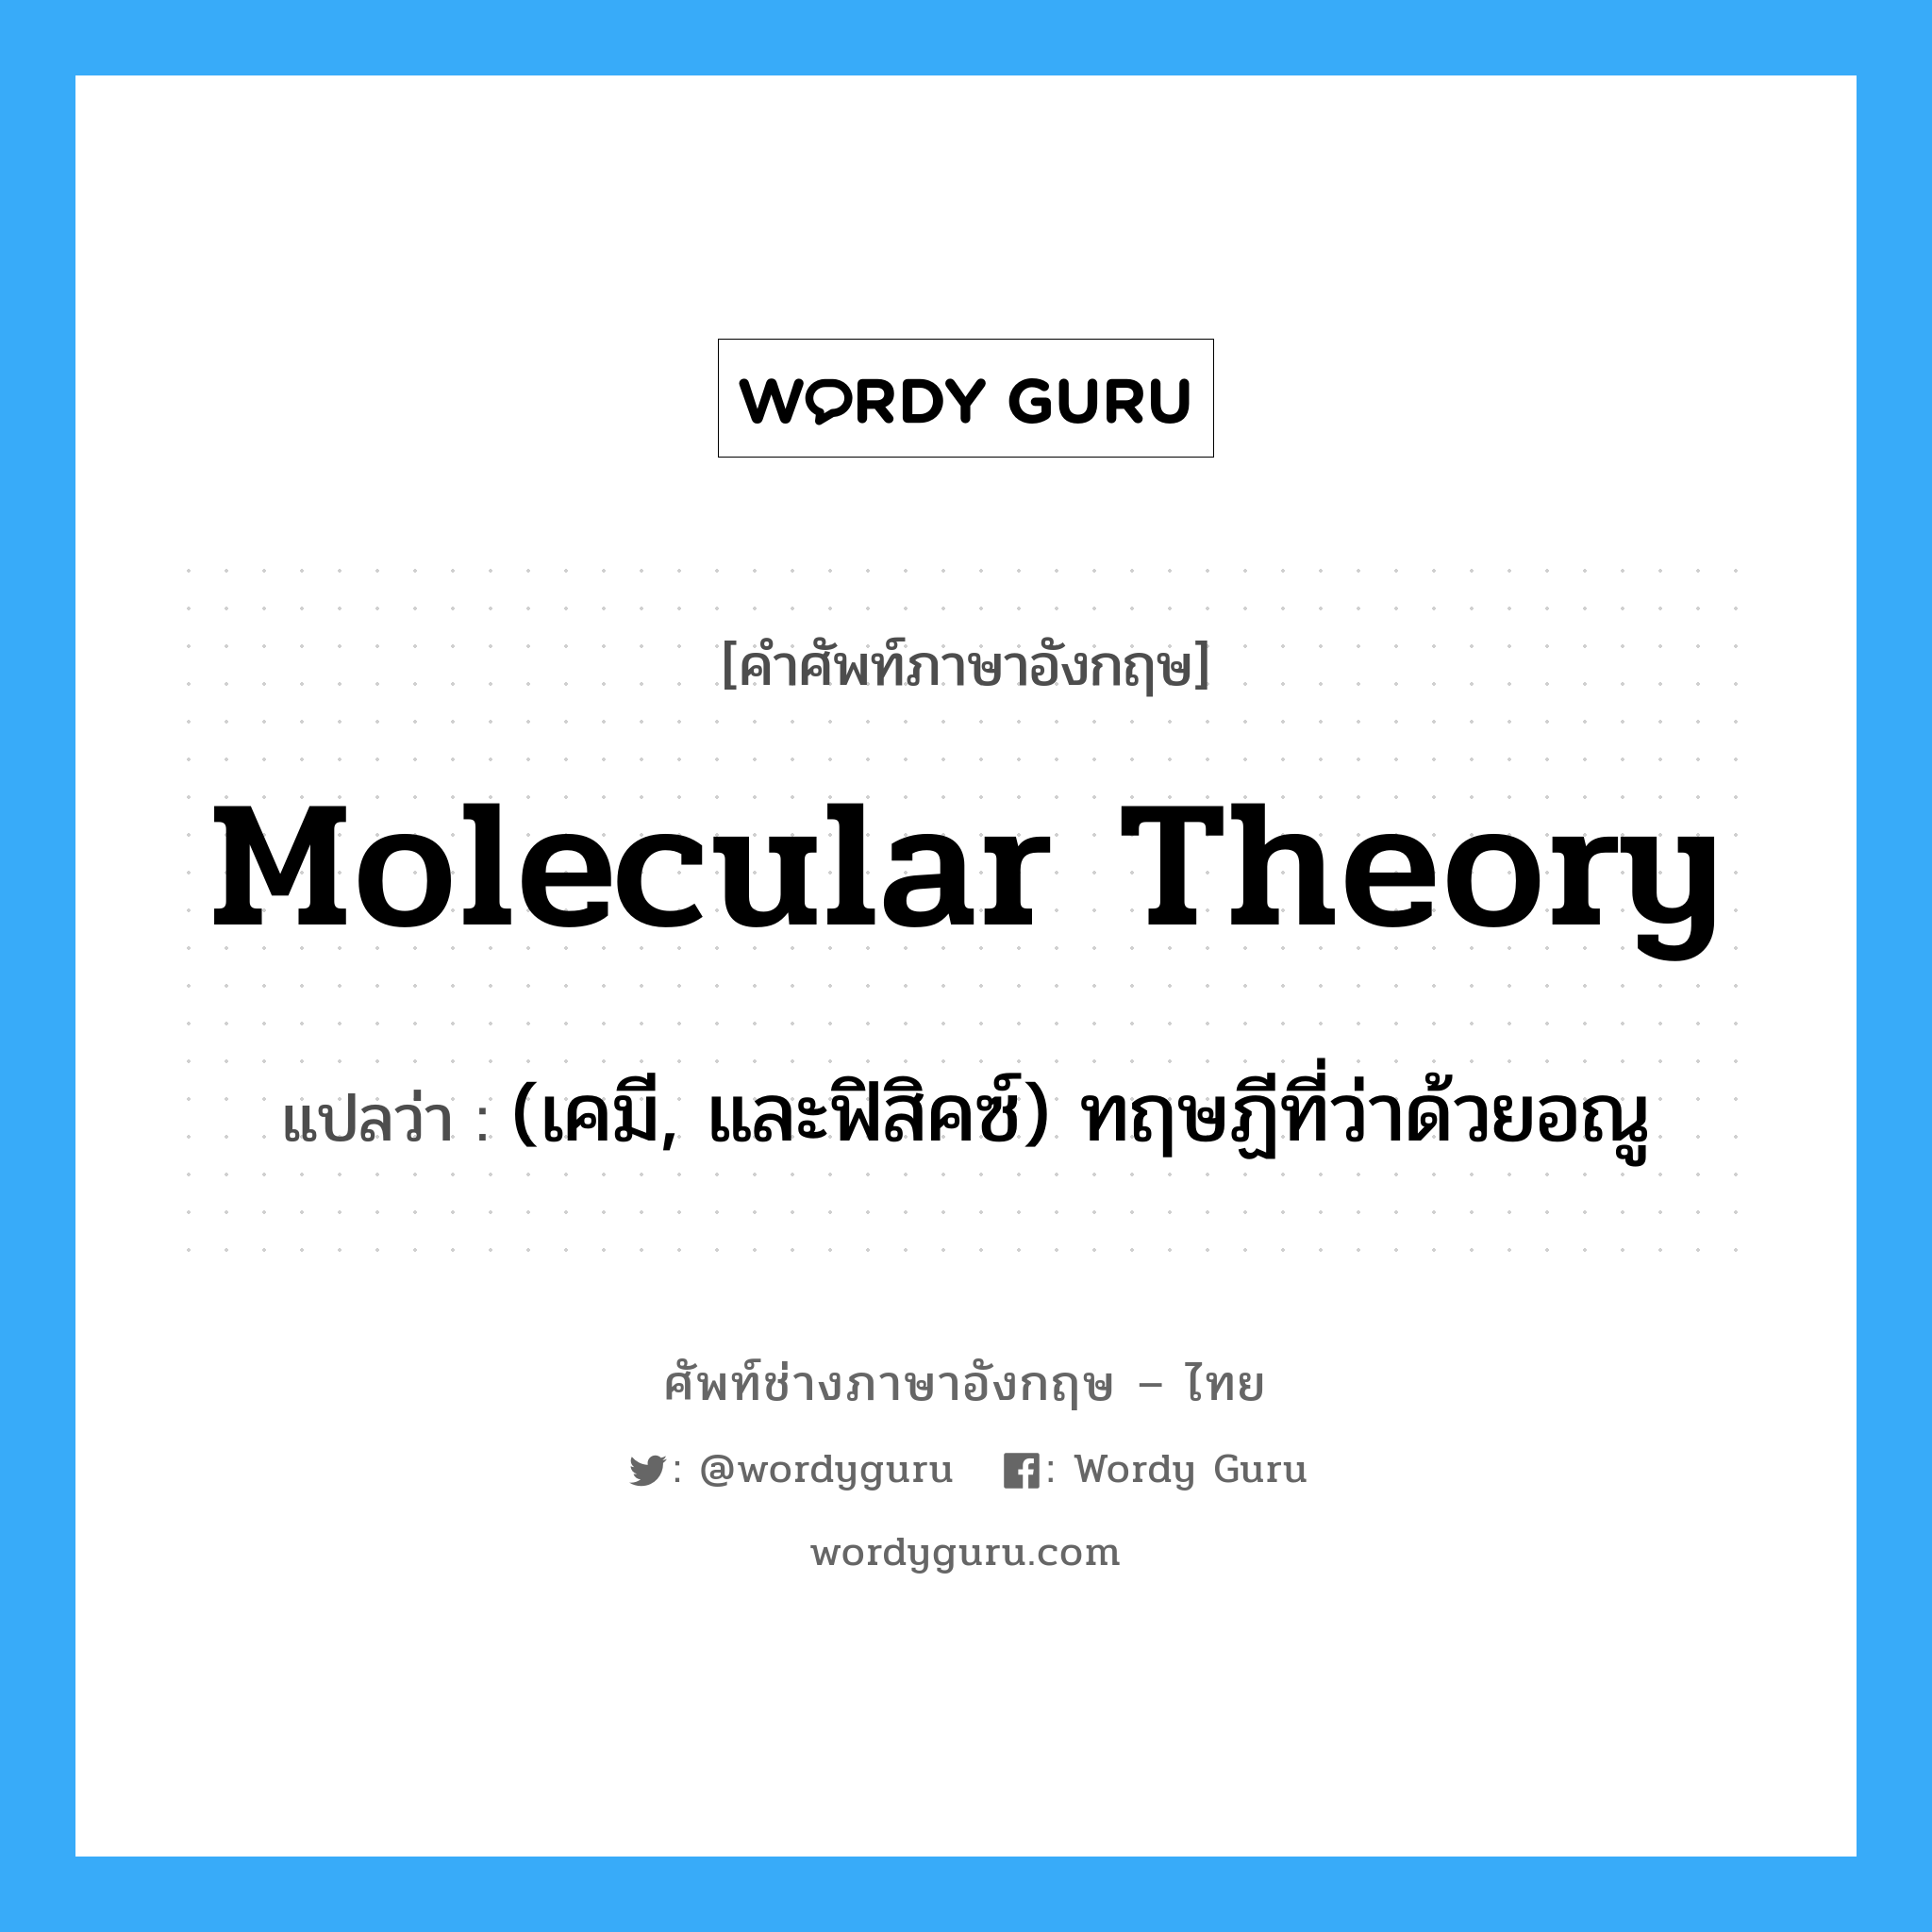 (เคมี, และฟิสิคซ์) ทฤษฏีที่ว่าด้วยอณู ภาษาอังกฤษ?, คำศัพท์ช่างภาษาอังกฤษ - ไทย (เคมี, และฟิสิคซ์) ทฤษฏีที่ว่าด้วยอณู คำศัพท์ภาษาอังกฤษ (เคมี, และฟิสิคซ์) ทฤษฏีที่ว่าด้วยอณู แปลว่า molecular theory